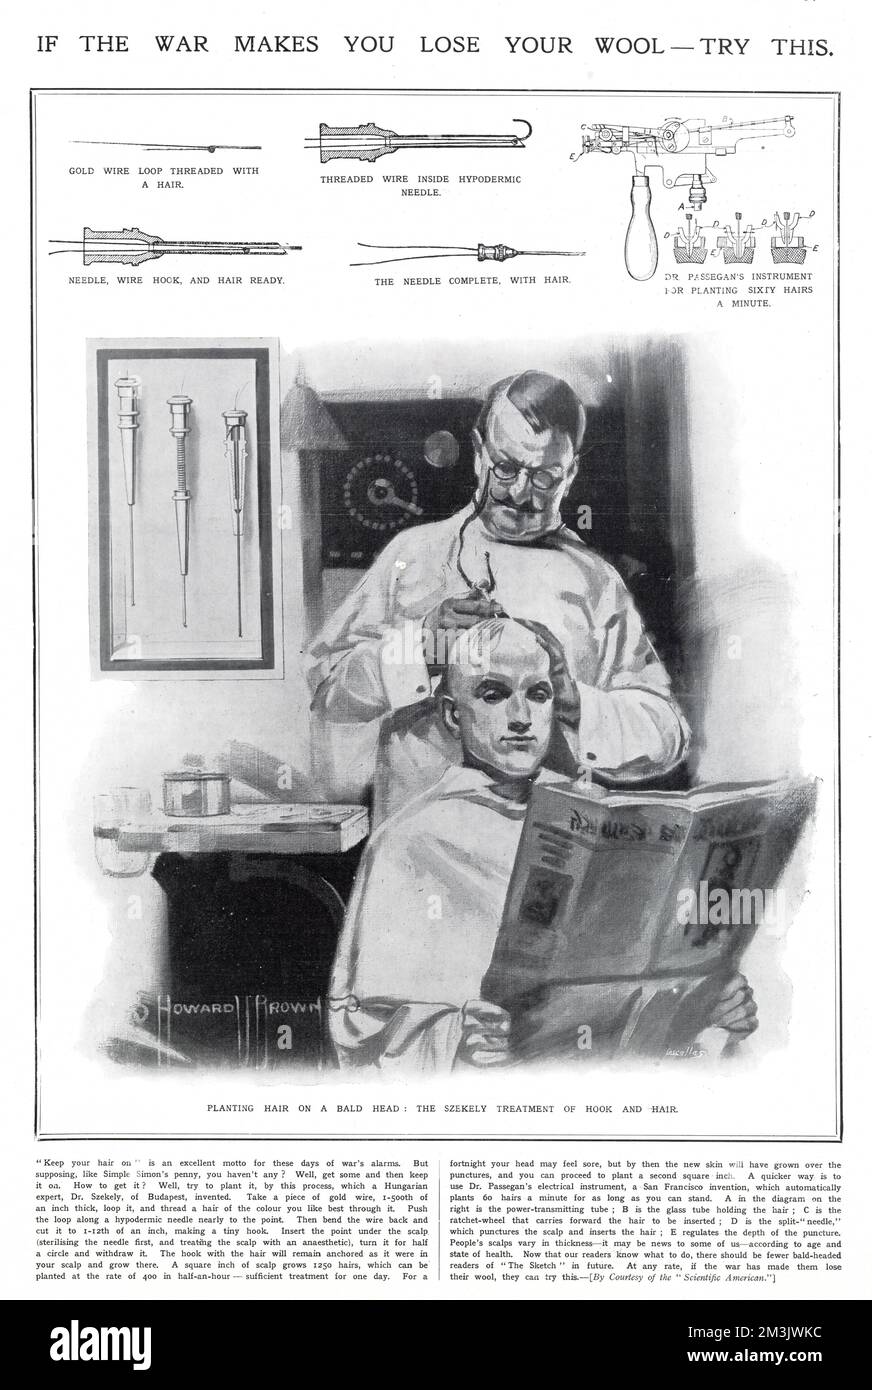 Diese Abbildung zeigt eine frühe Form der Haartransplantation, die von einem Dr. Szekely aus Budapest unterstützt wird. Die Technik, bei der ein Draht mit Haaren fädelte, der dann durch eine Injektionsnadel in die Kopfhaut injiziert wurde, konnte dem Patienten offensichtlich bis zu 60 Haare pro Minute in den Kopf Pflanzen, ohne dass es dem Bild zufolge unangenehm war. Stockfoto